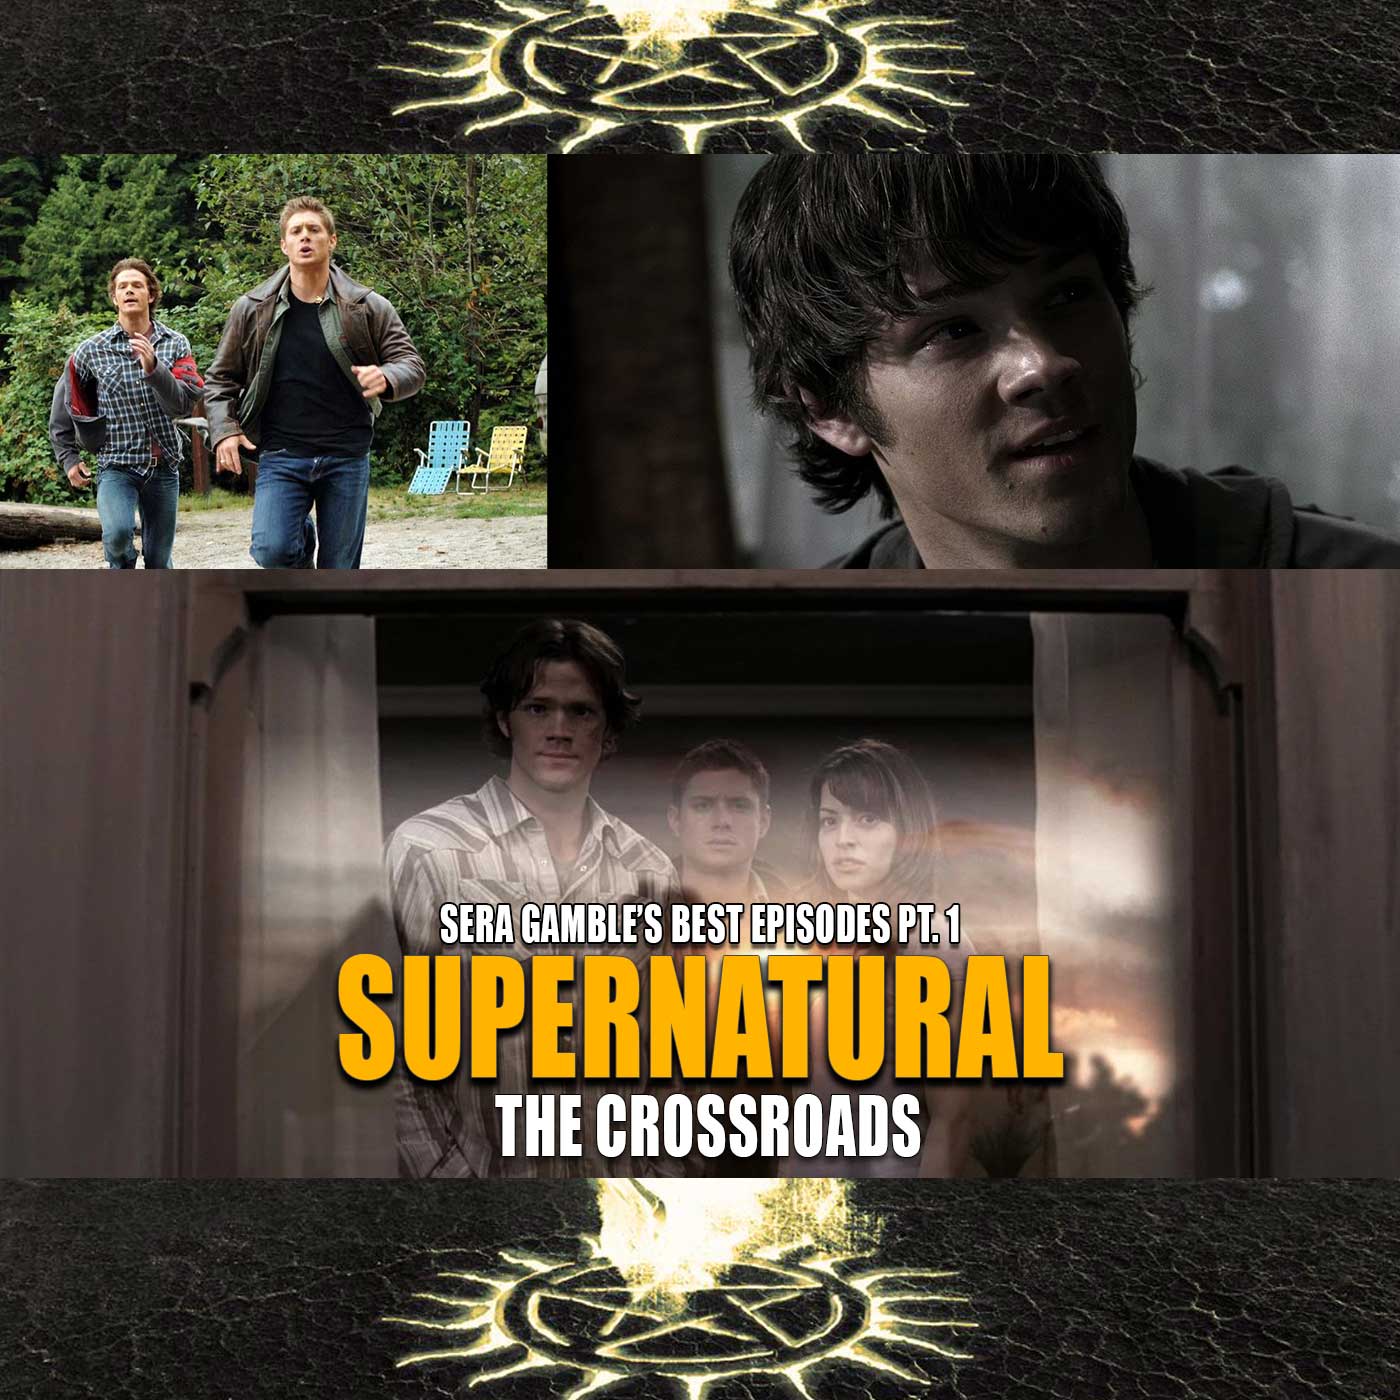 Sera Gamble’s Writing on Supernatural (Top 5 Episodes) – Pt. 1